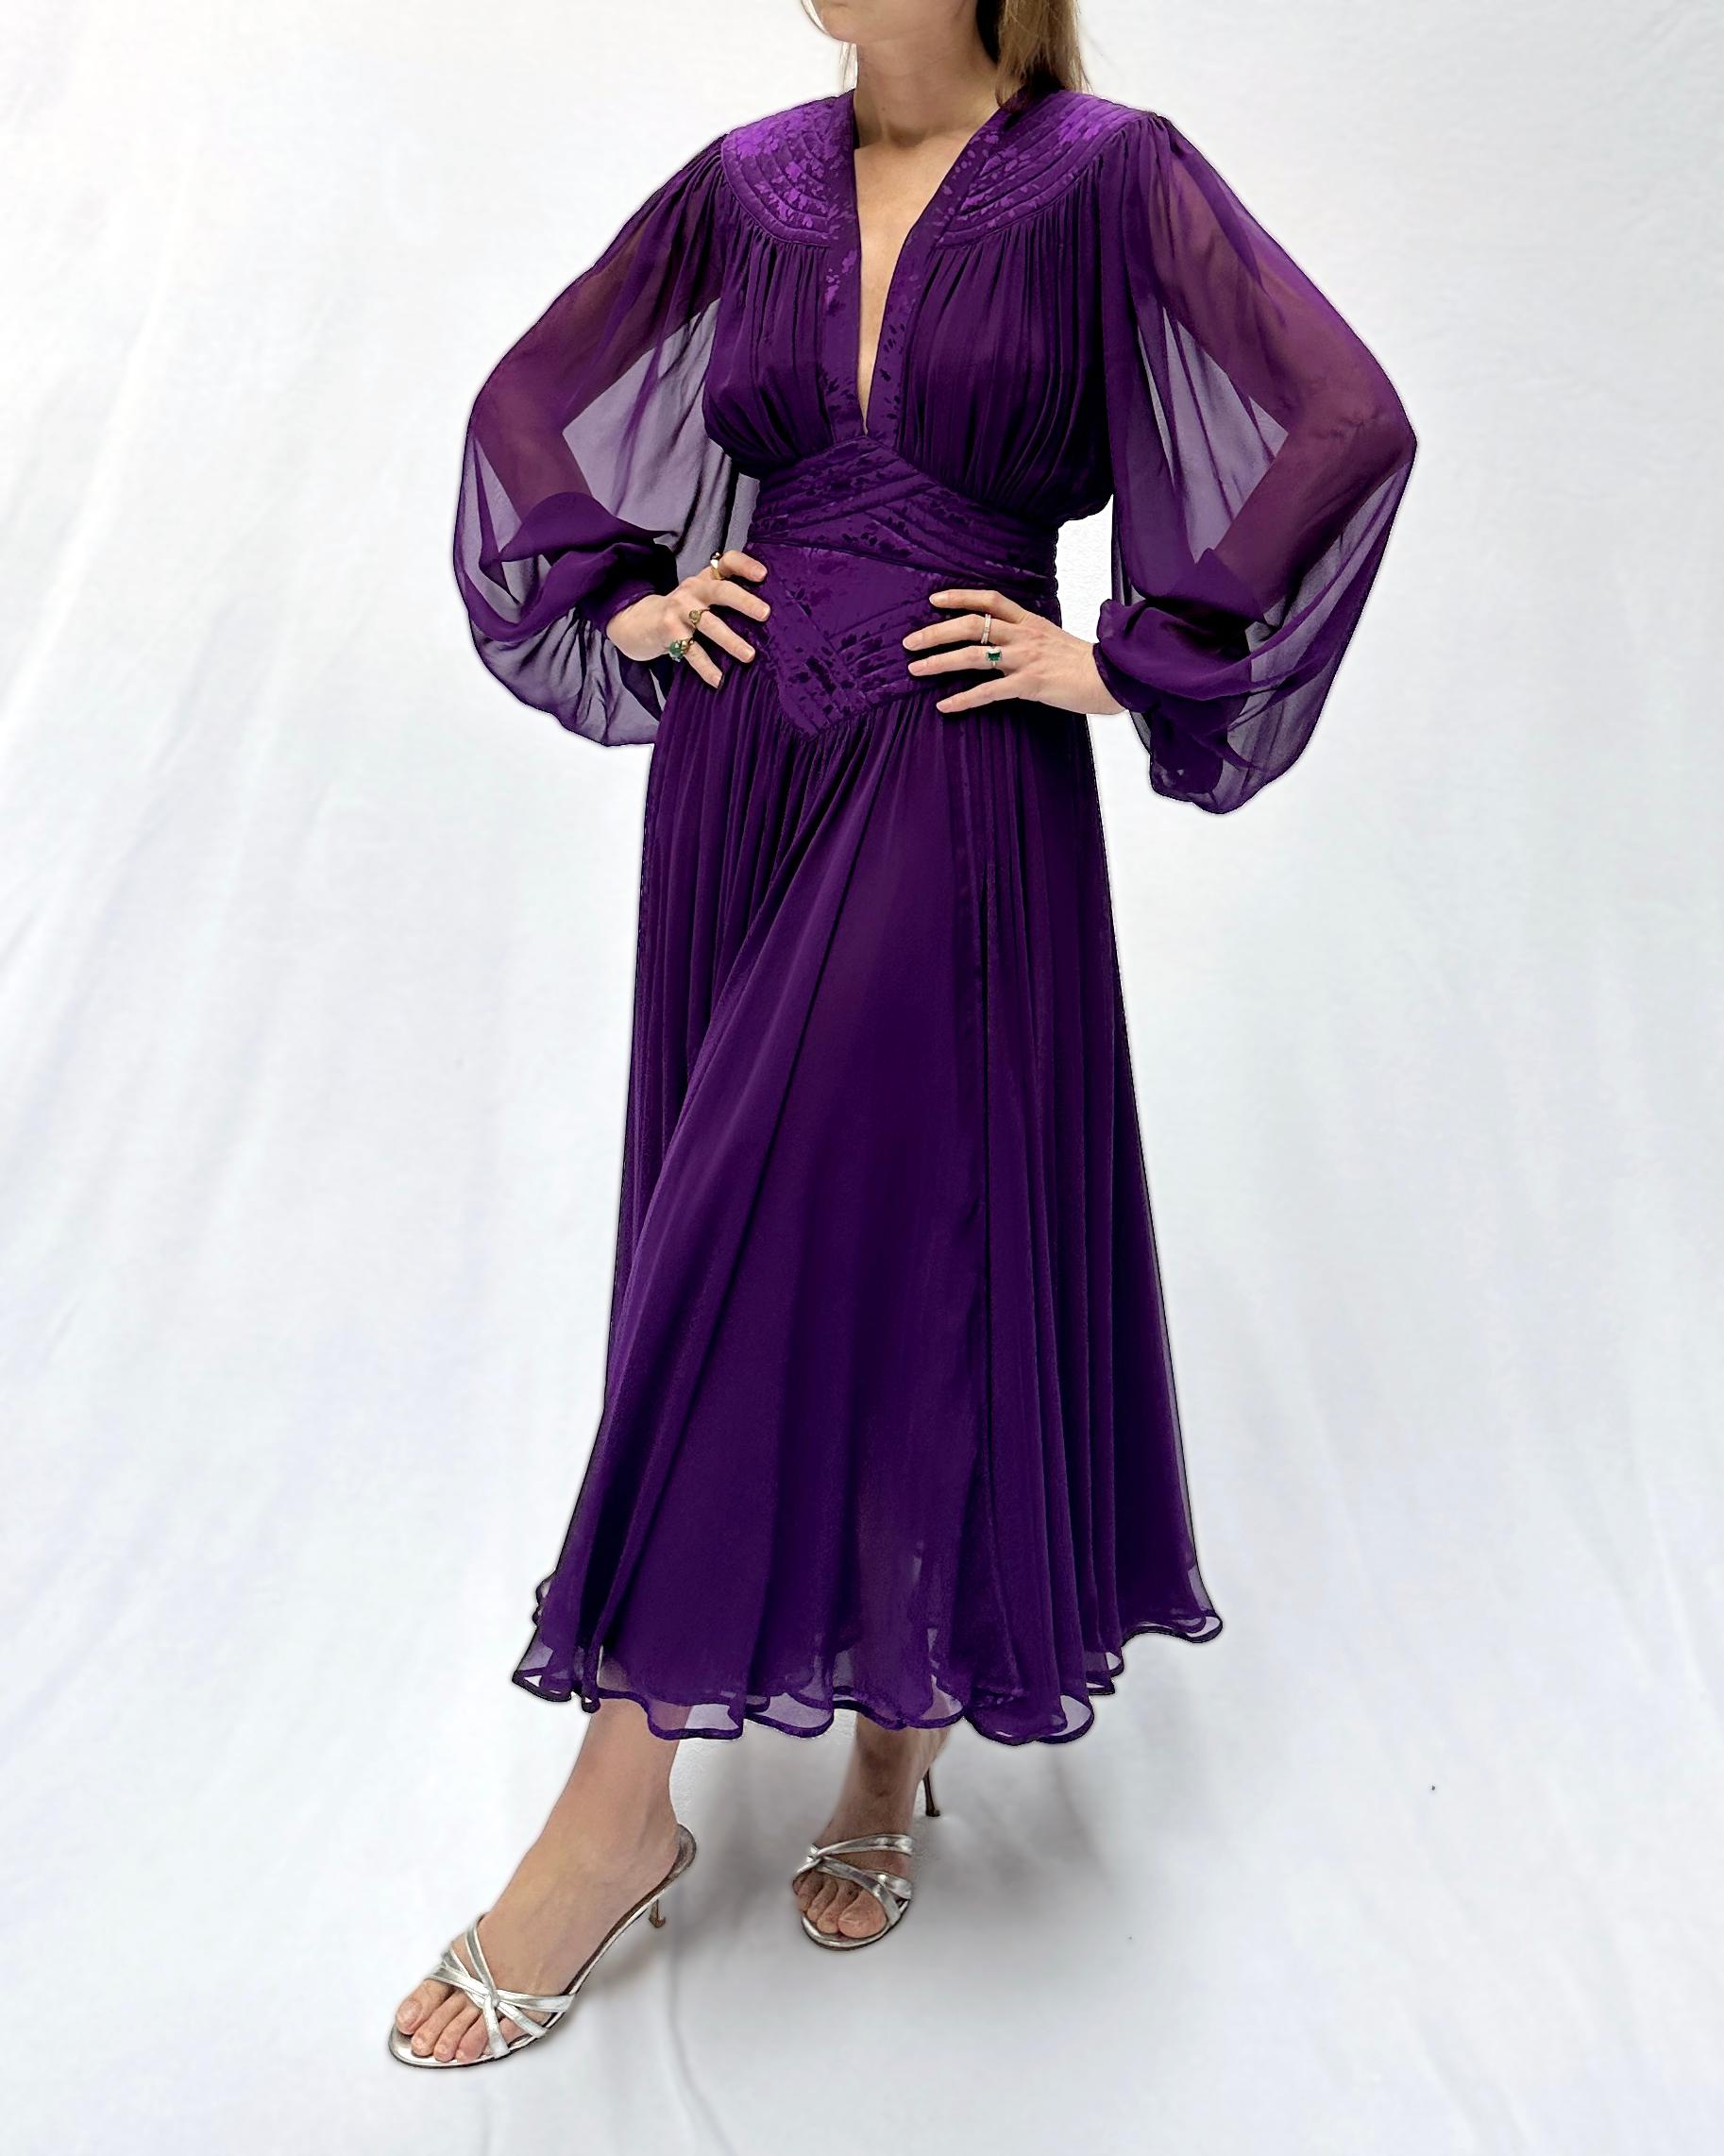 Cette robe vintage des années 1980 de Wayne Clark est une pure magie - la majestueuse couleur violette semble étonnante sur tout le monde. Wayne Clark est un styliste canadien, connu pour ses créations de couture sur mesure et ses tenues de soirée